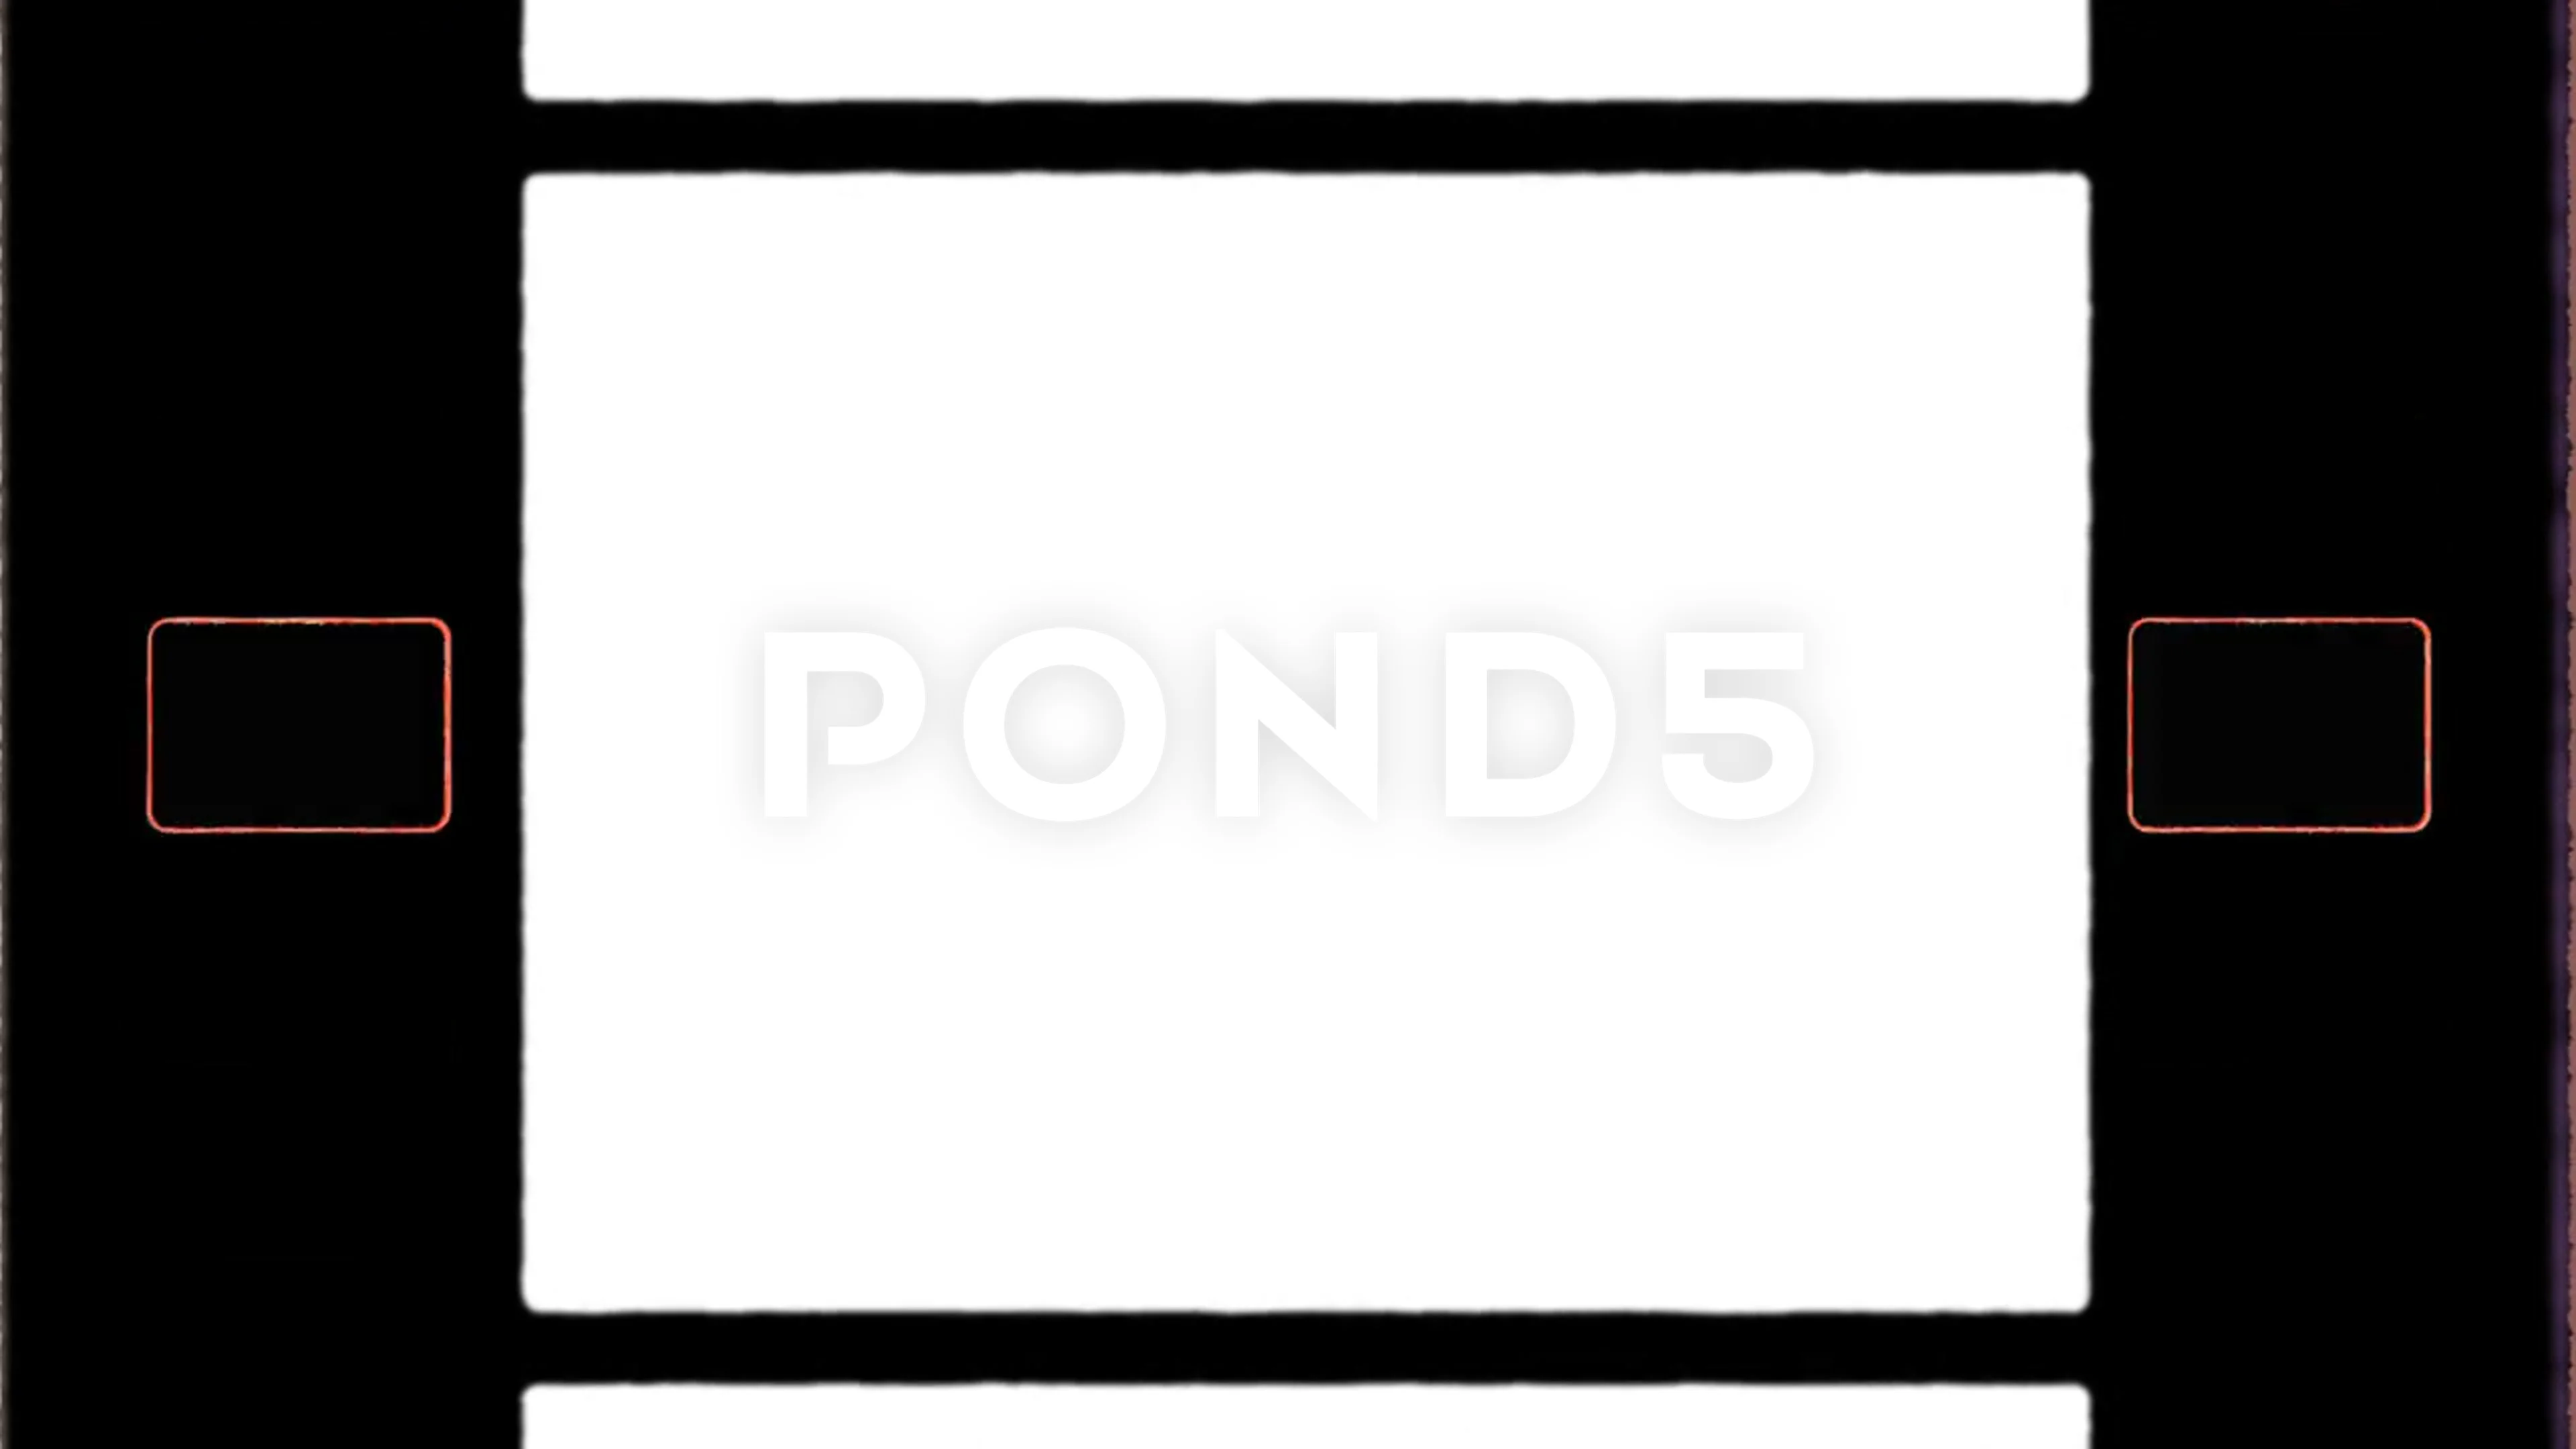 https://images.pond5.com/4k-authentic-16mm-film-frame-169406045_prevstill.jpeg